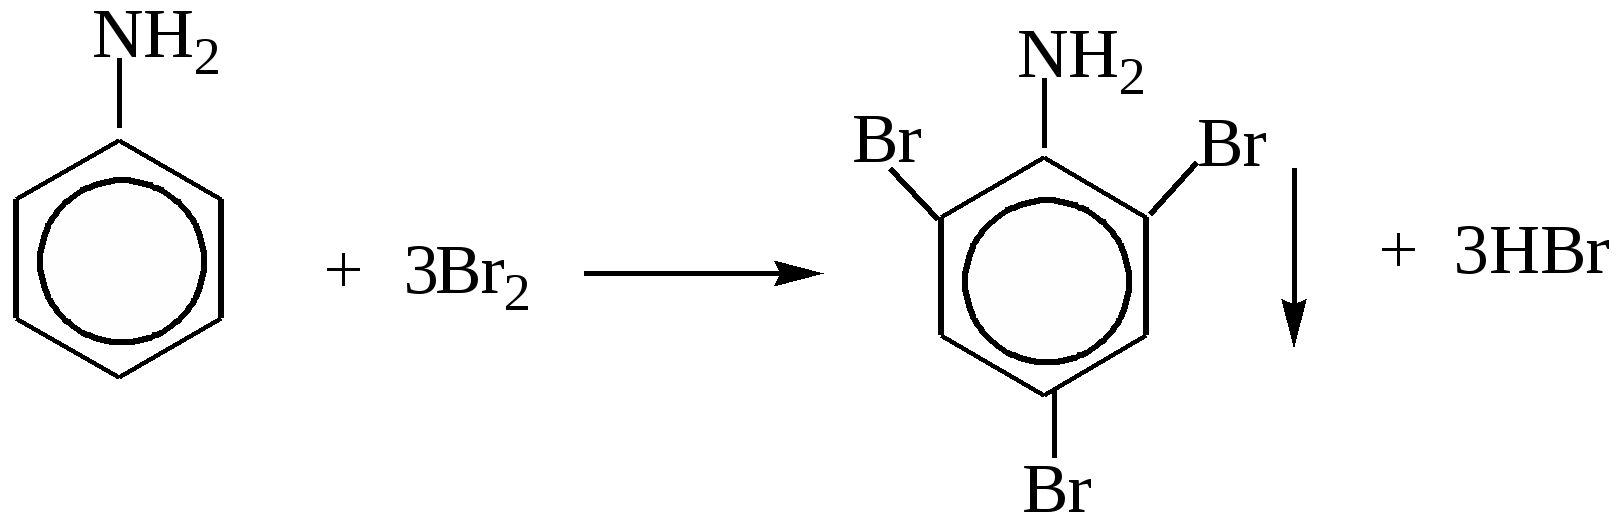 Анилин caocl2. Анилин плюс хлорная известь. Анилин и хлорная известь качественная реакция. Анилин с хлорной известью реакция. Анилин гидроксид меди 2